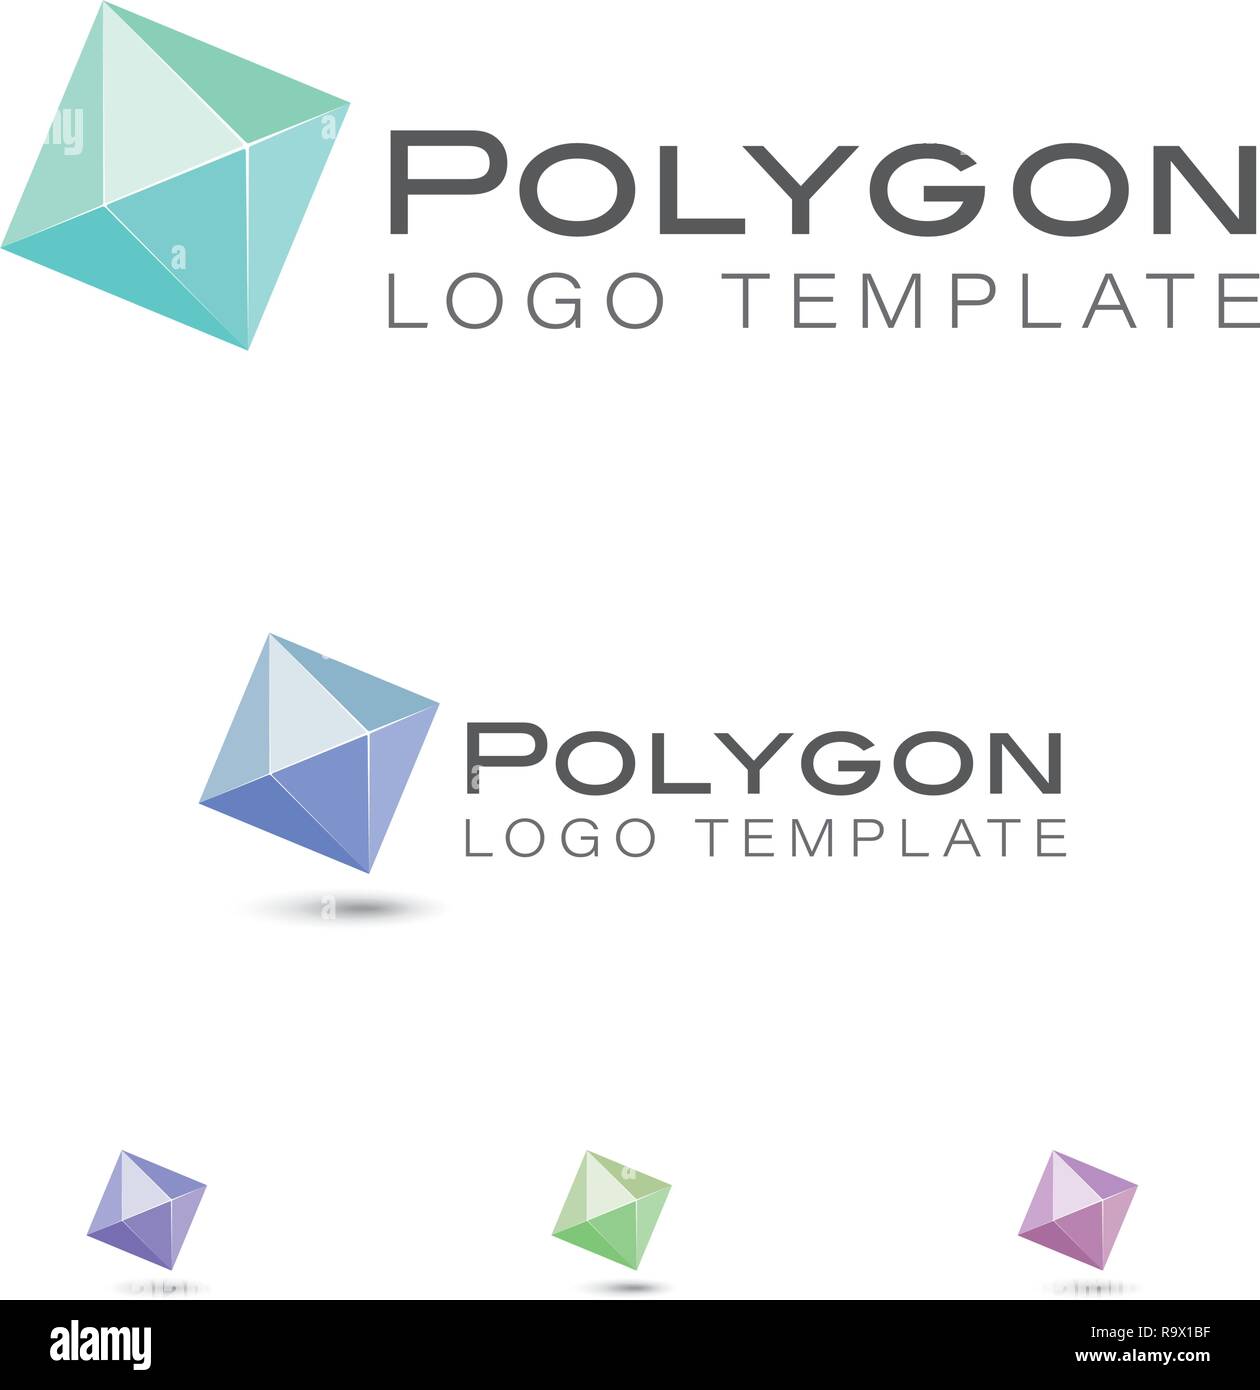 Polygon or diamond symbol vector company logo template Stock Vector